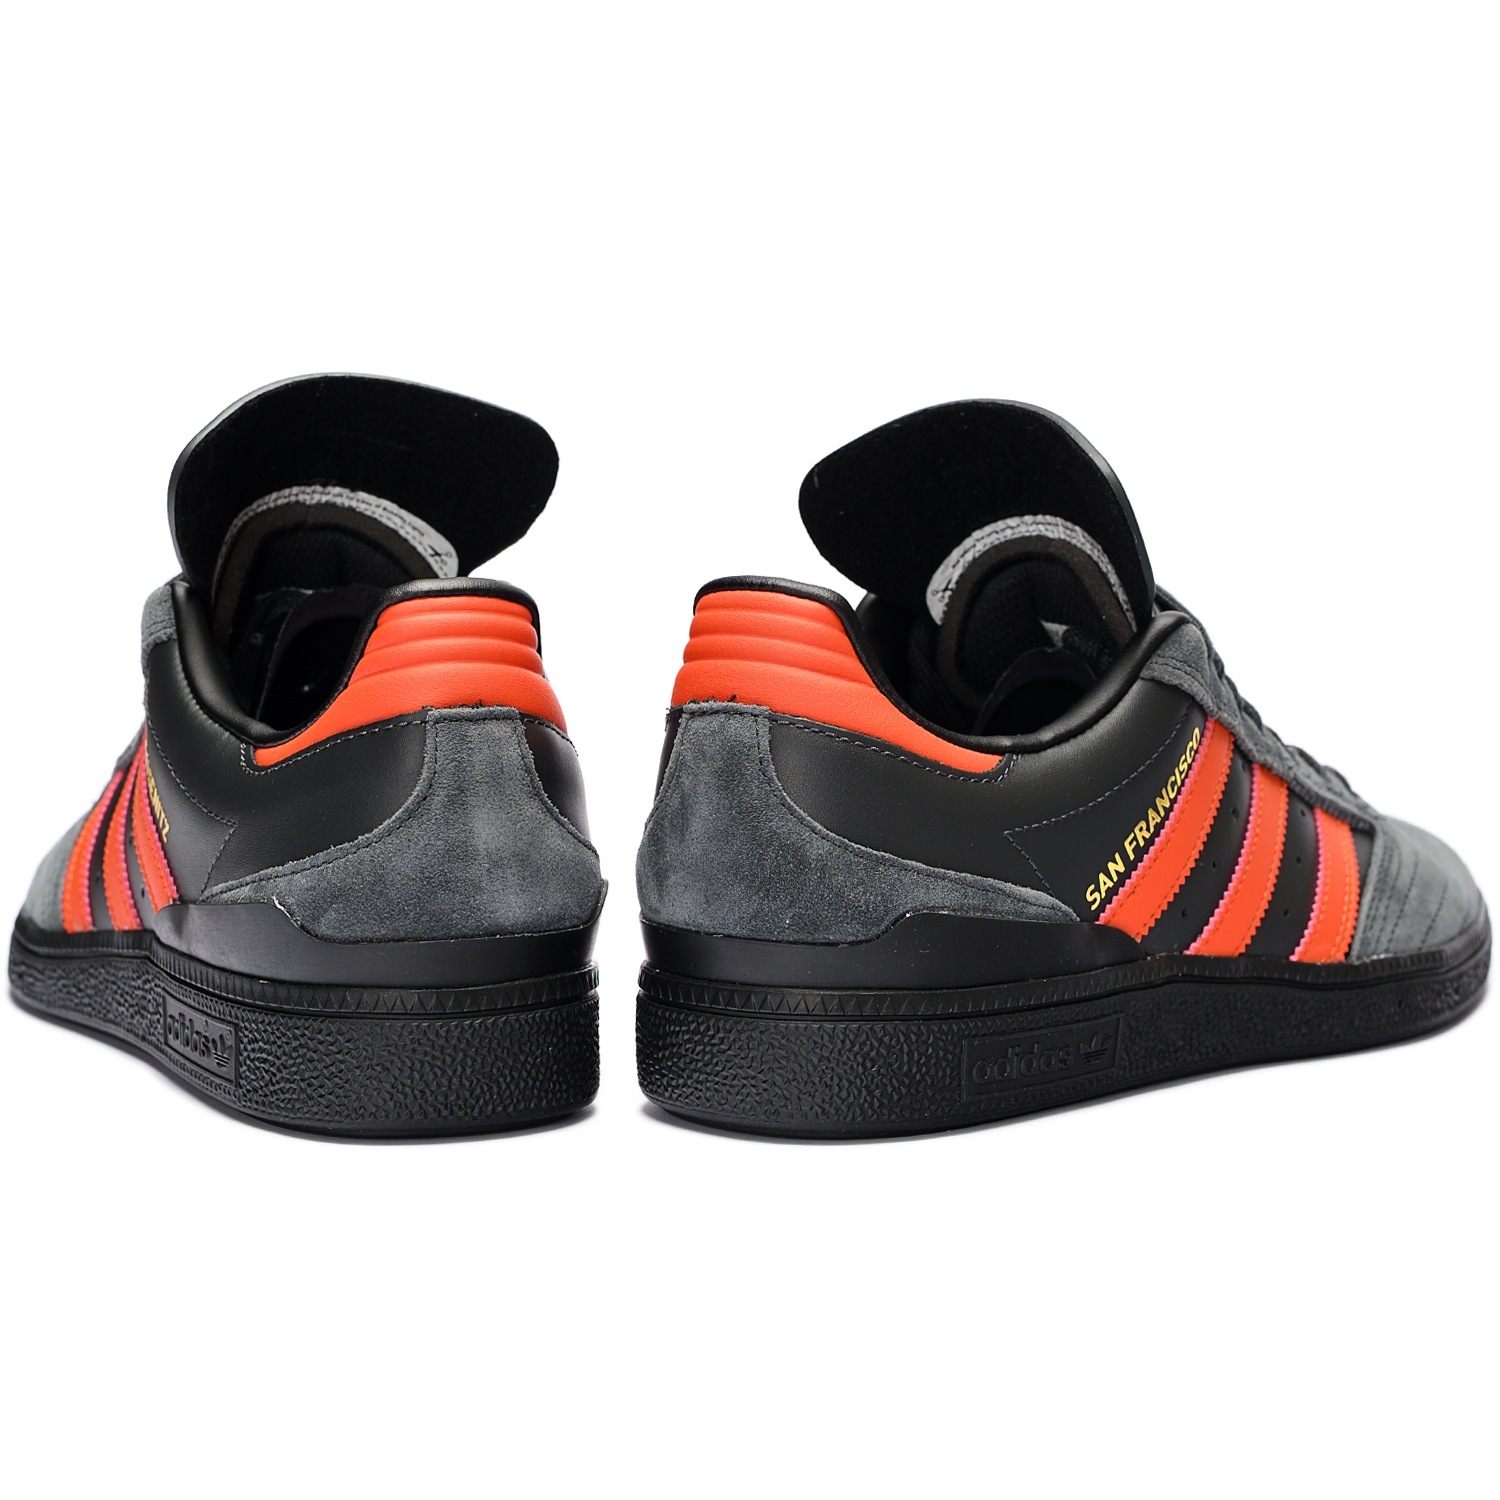 Adidas Originals Busenitz Pro San Francisco Signature City Carbon / Collegiate Orange / Core Black